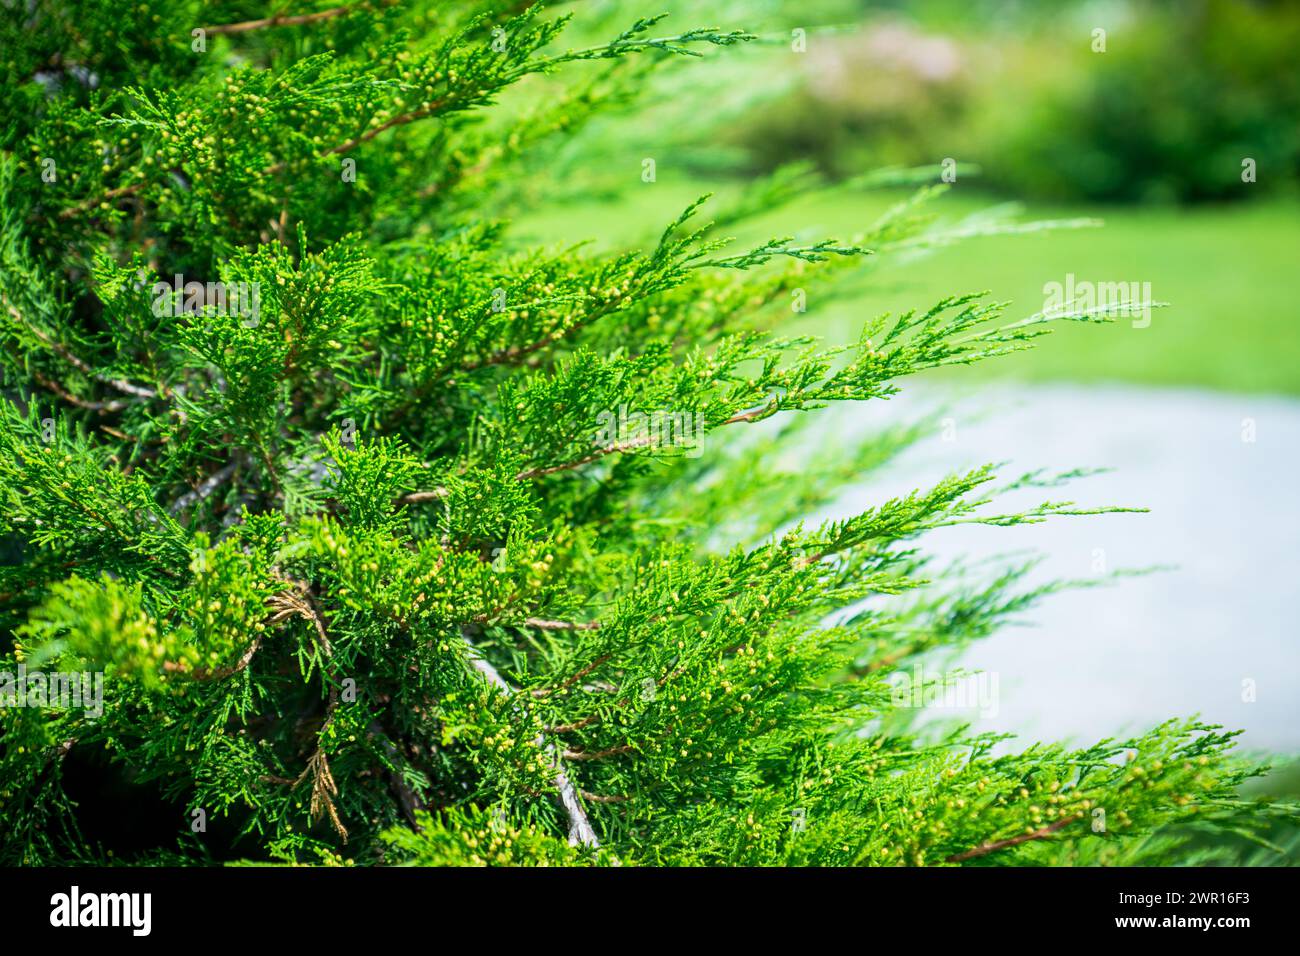 Green thuja bush in the garden. Selective focus. Stock Photo